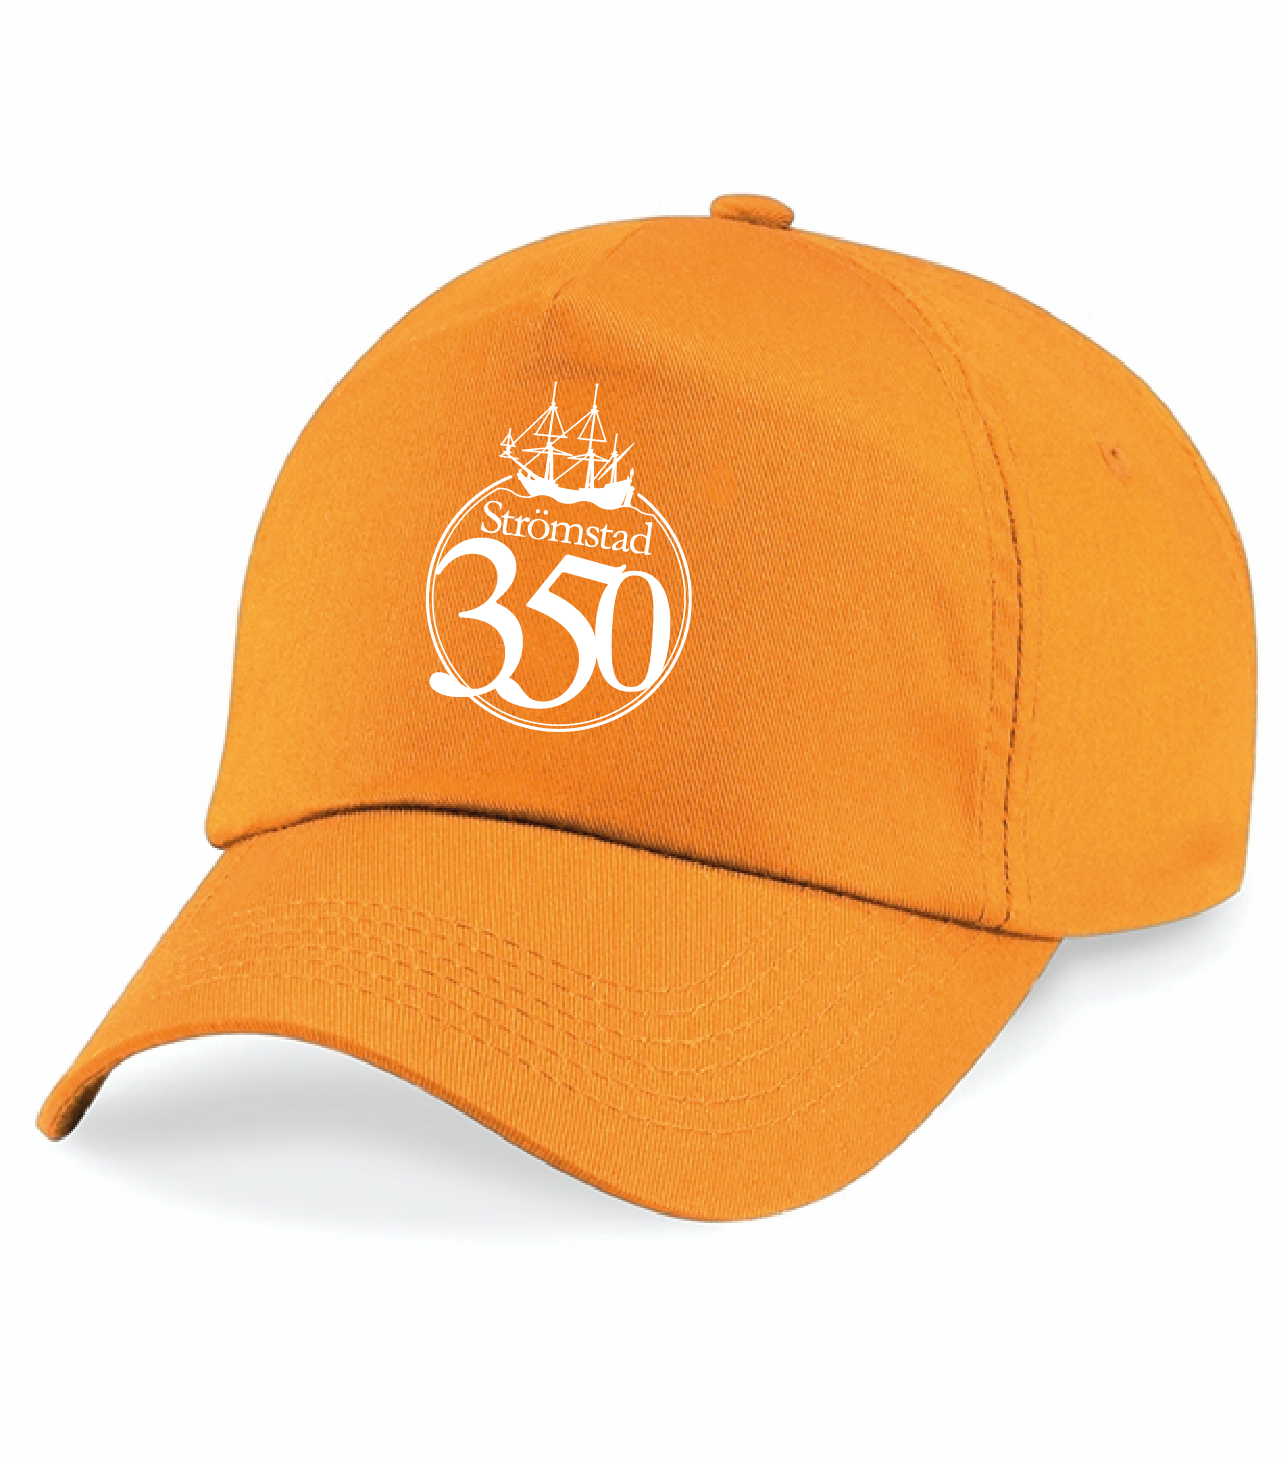 Orange Keps "STRÖMSTAD 350 år"